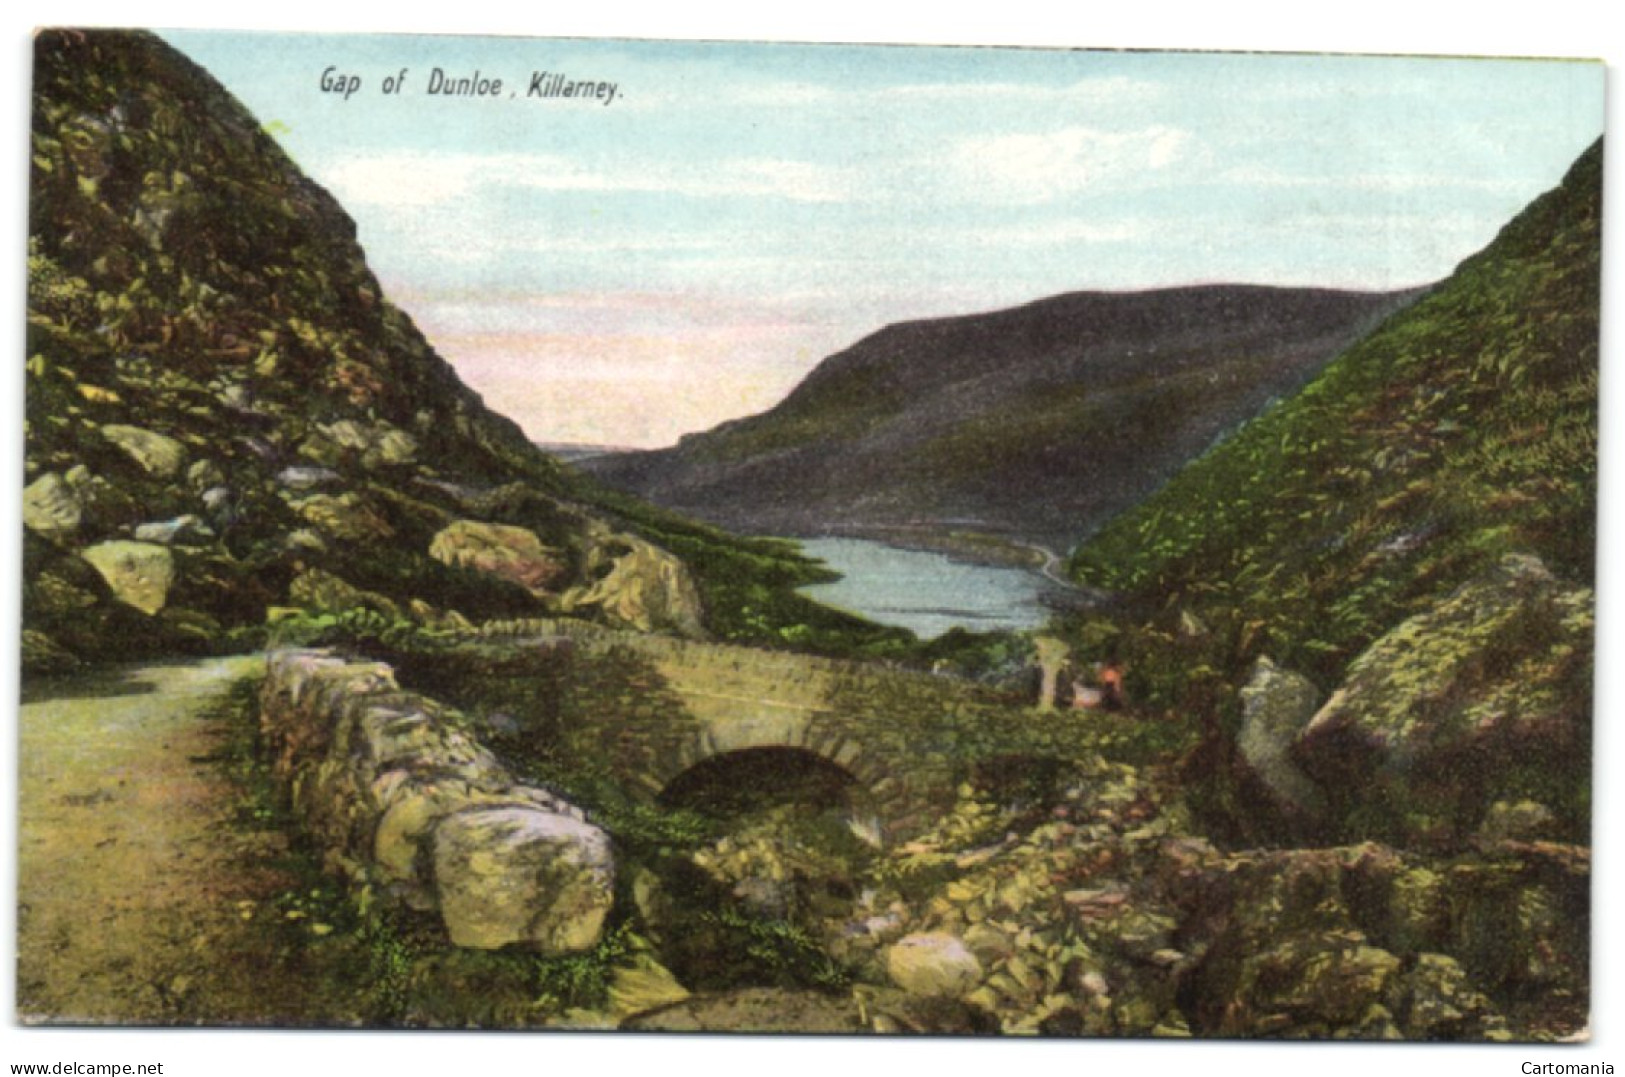 Gap Of Dunloe - Killarney - Kerry